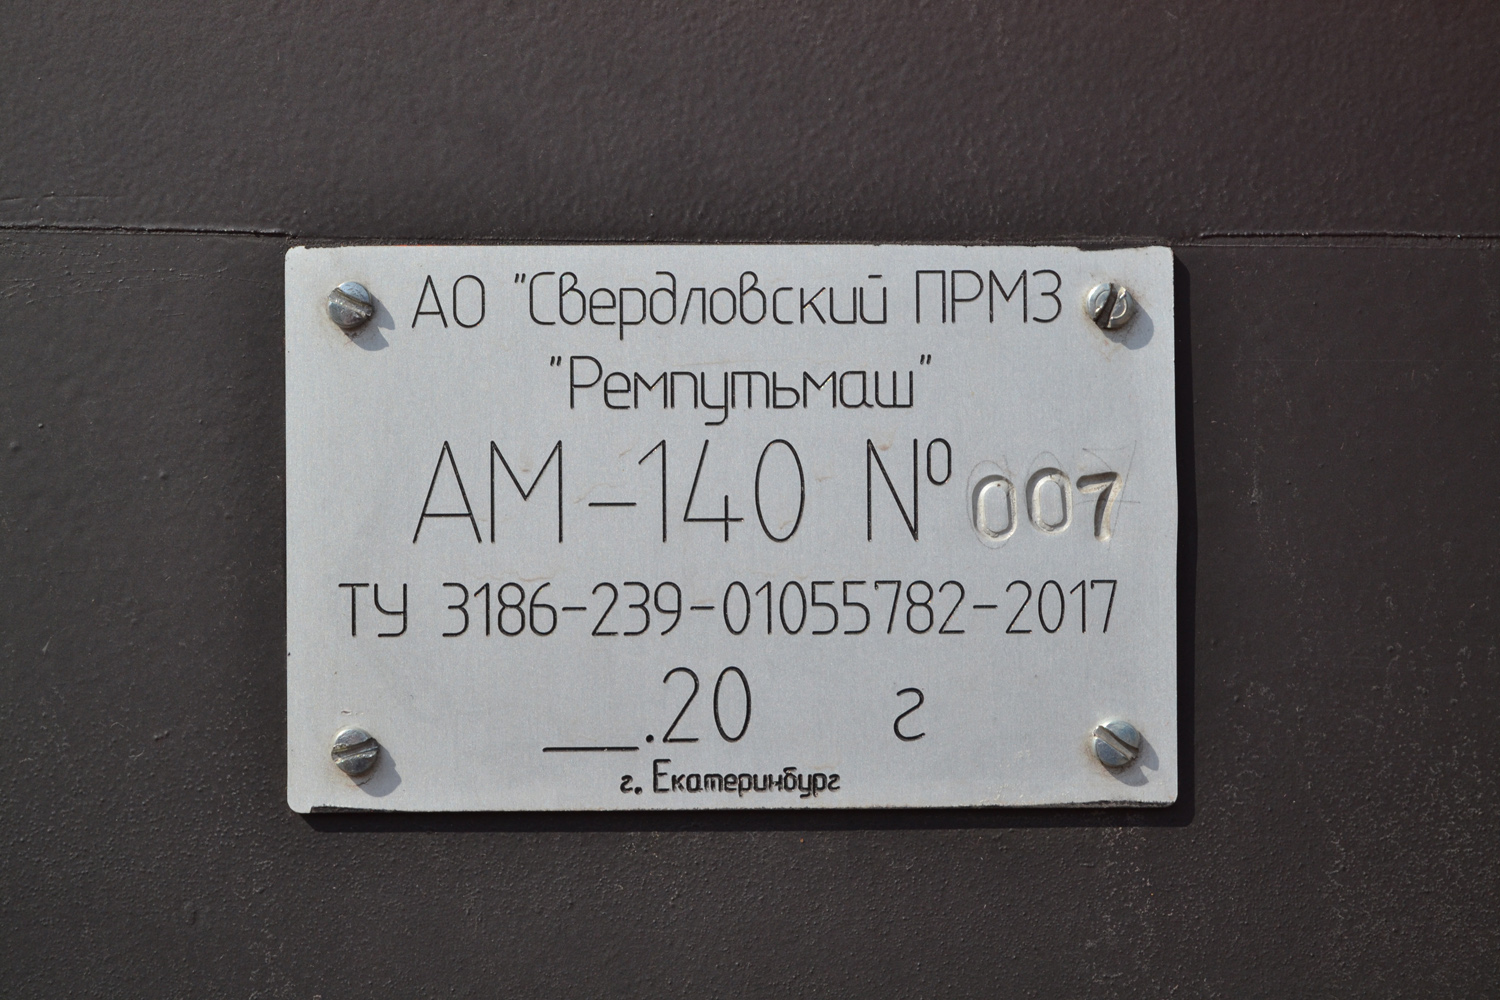 АМ140-007